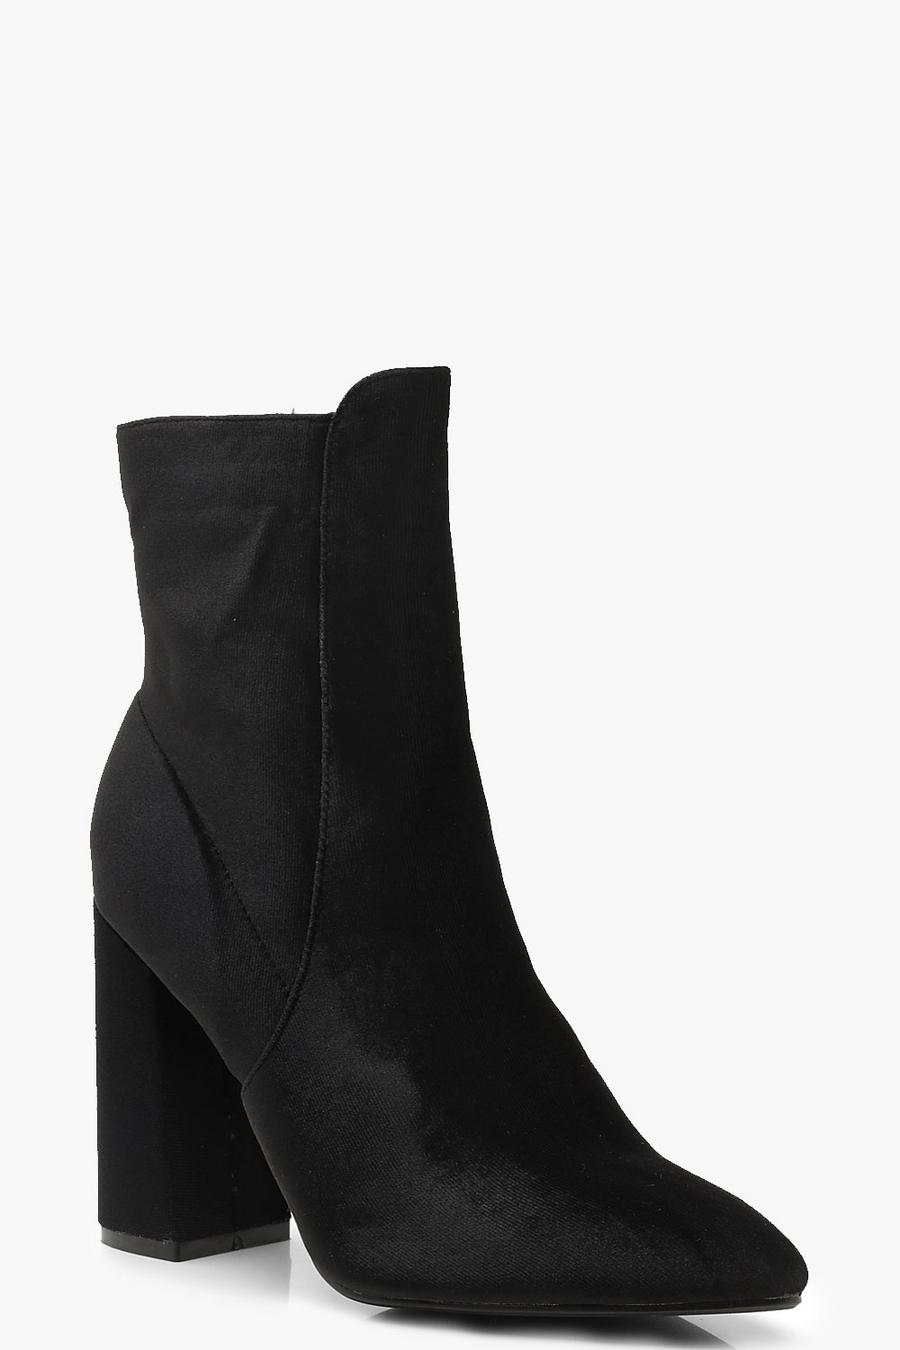 Black Velvet Block Heel Shoe Boots image number 1